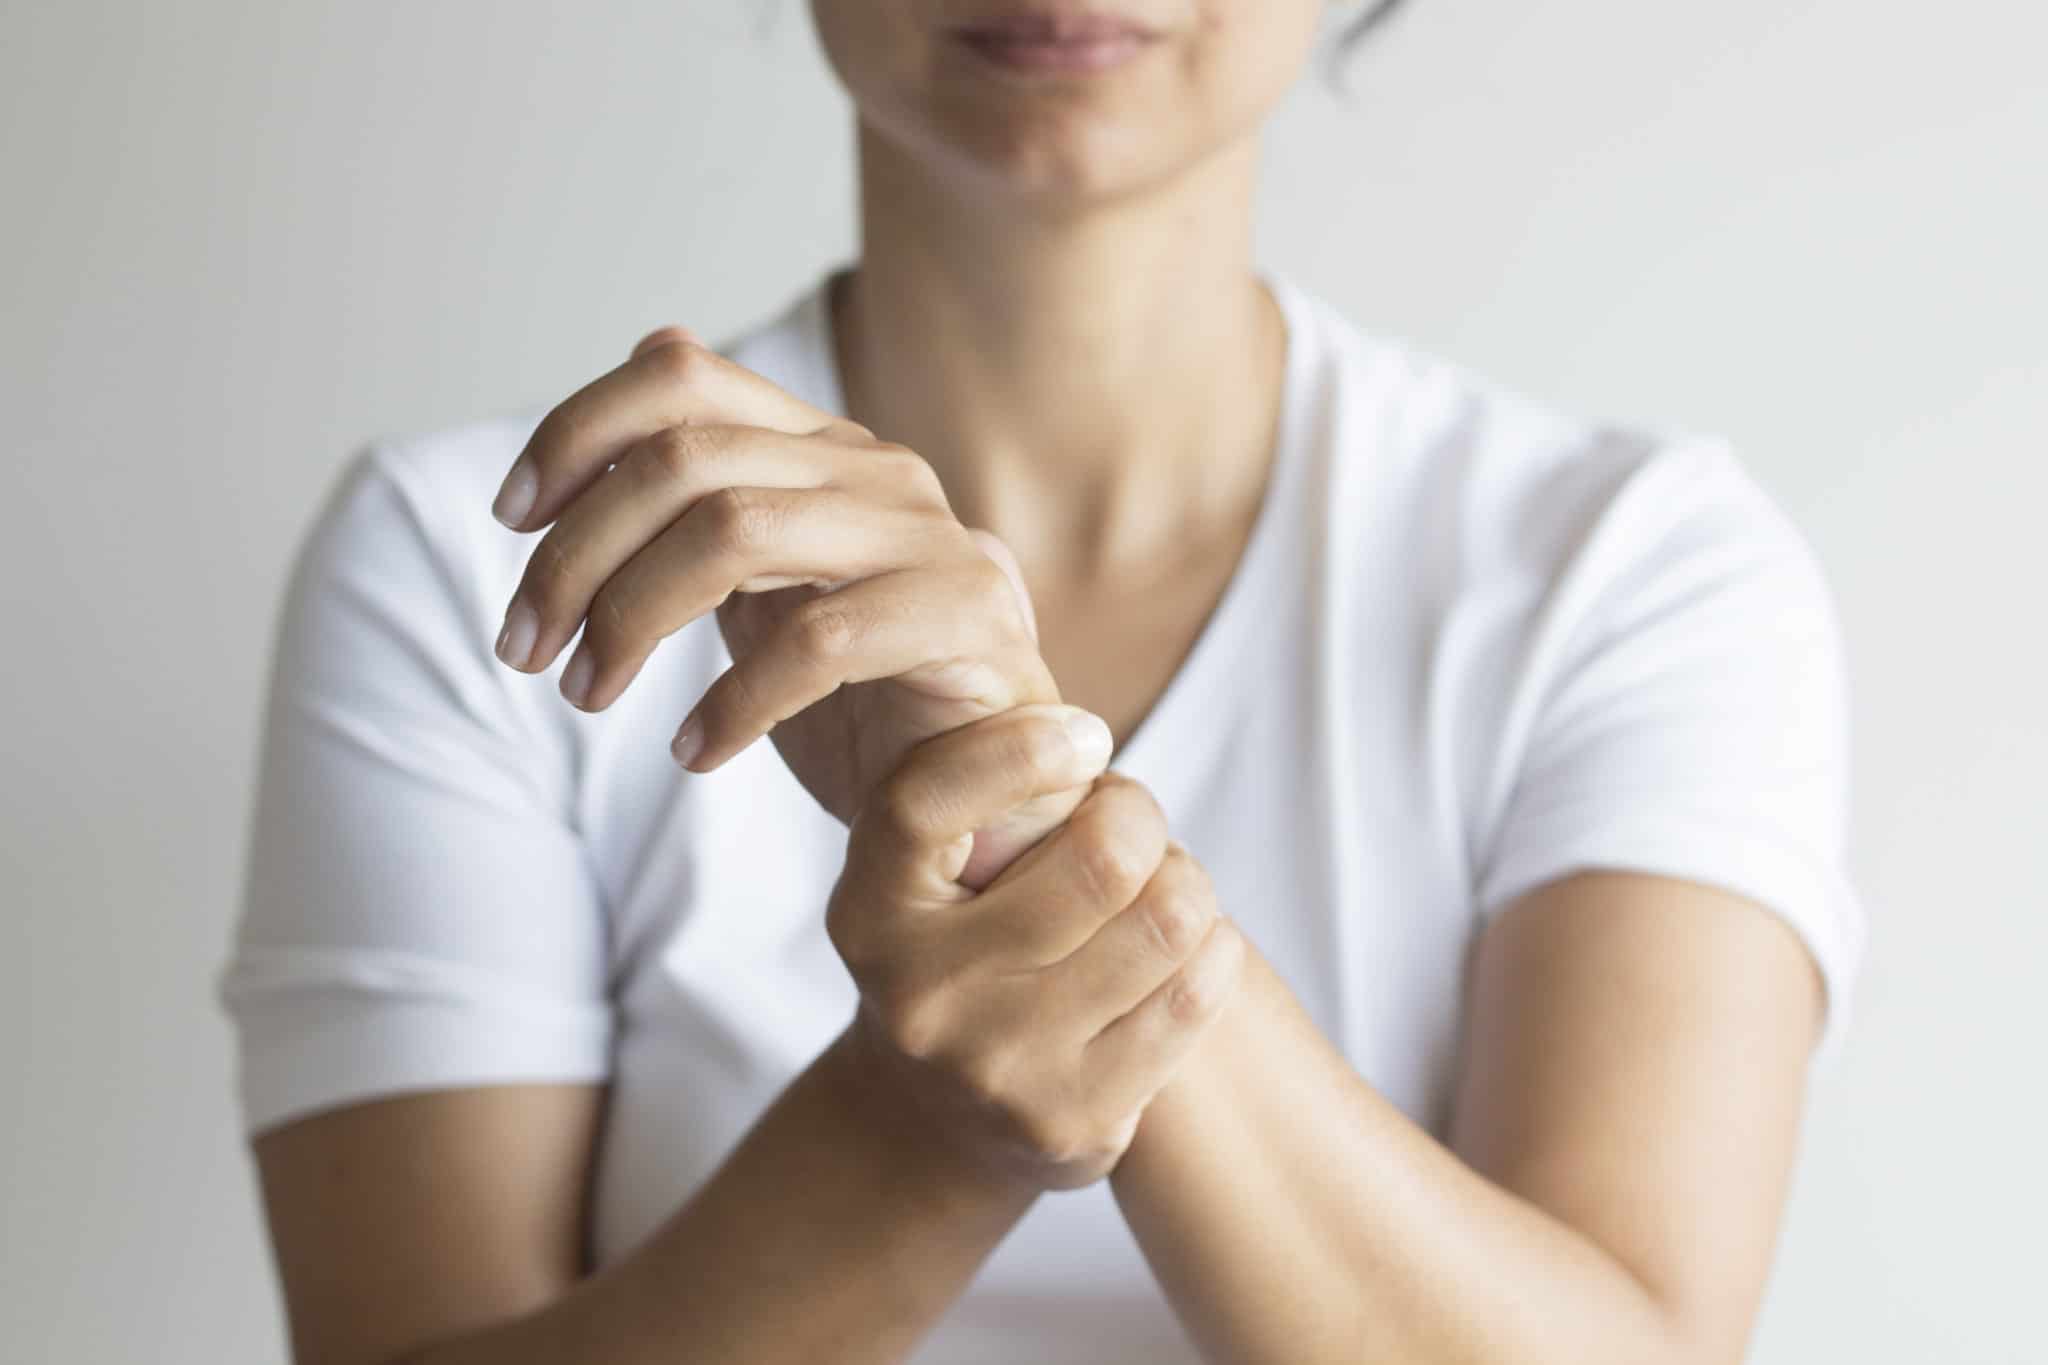 Carpal Tunnel Test & Best Treatment – Fix & Repair Wrist Pain